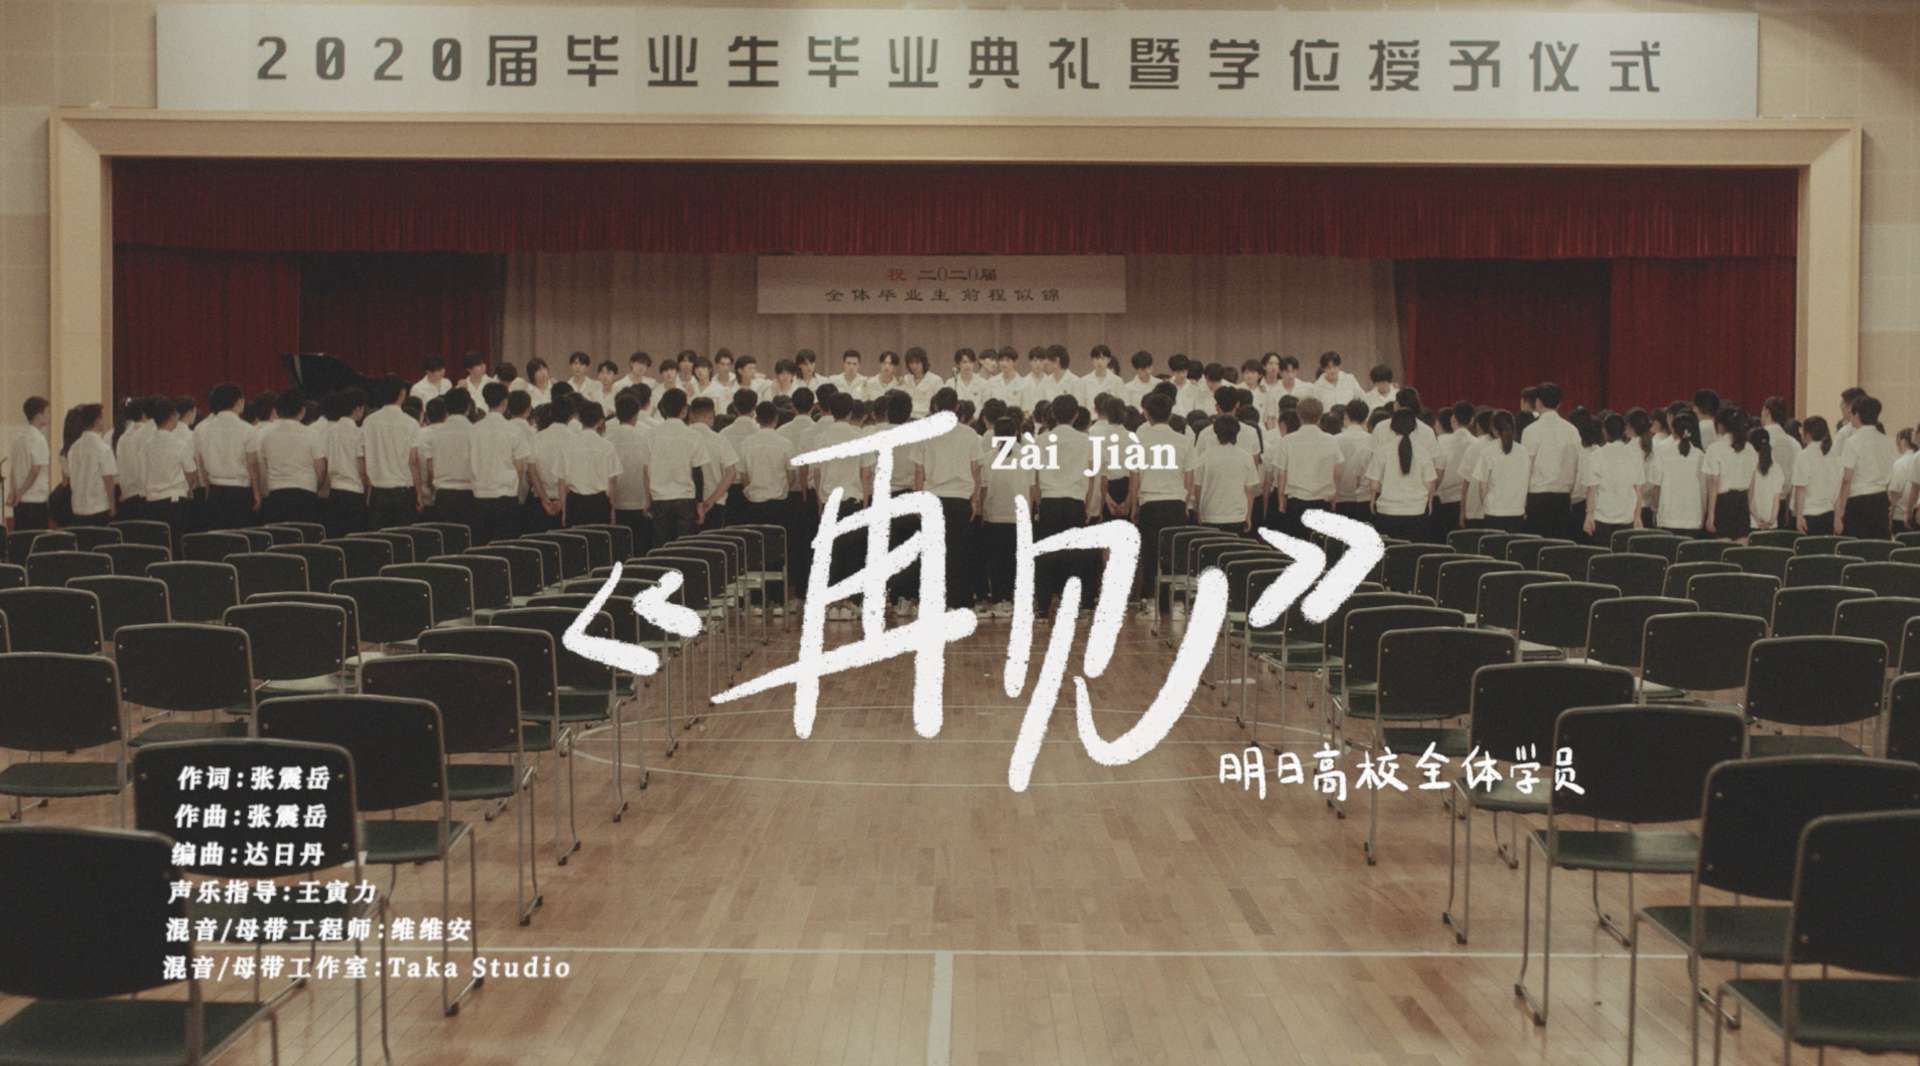 《再见》MV——明日高校全体学员